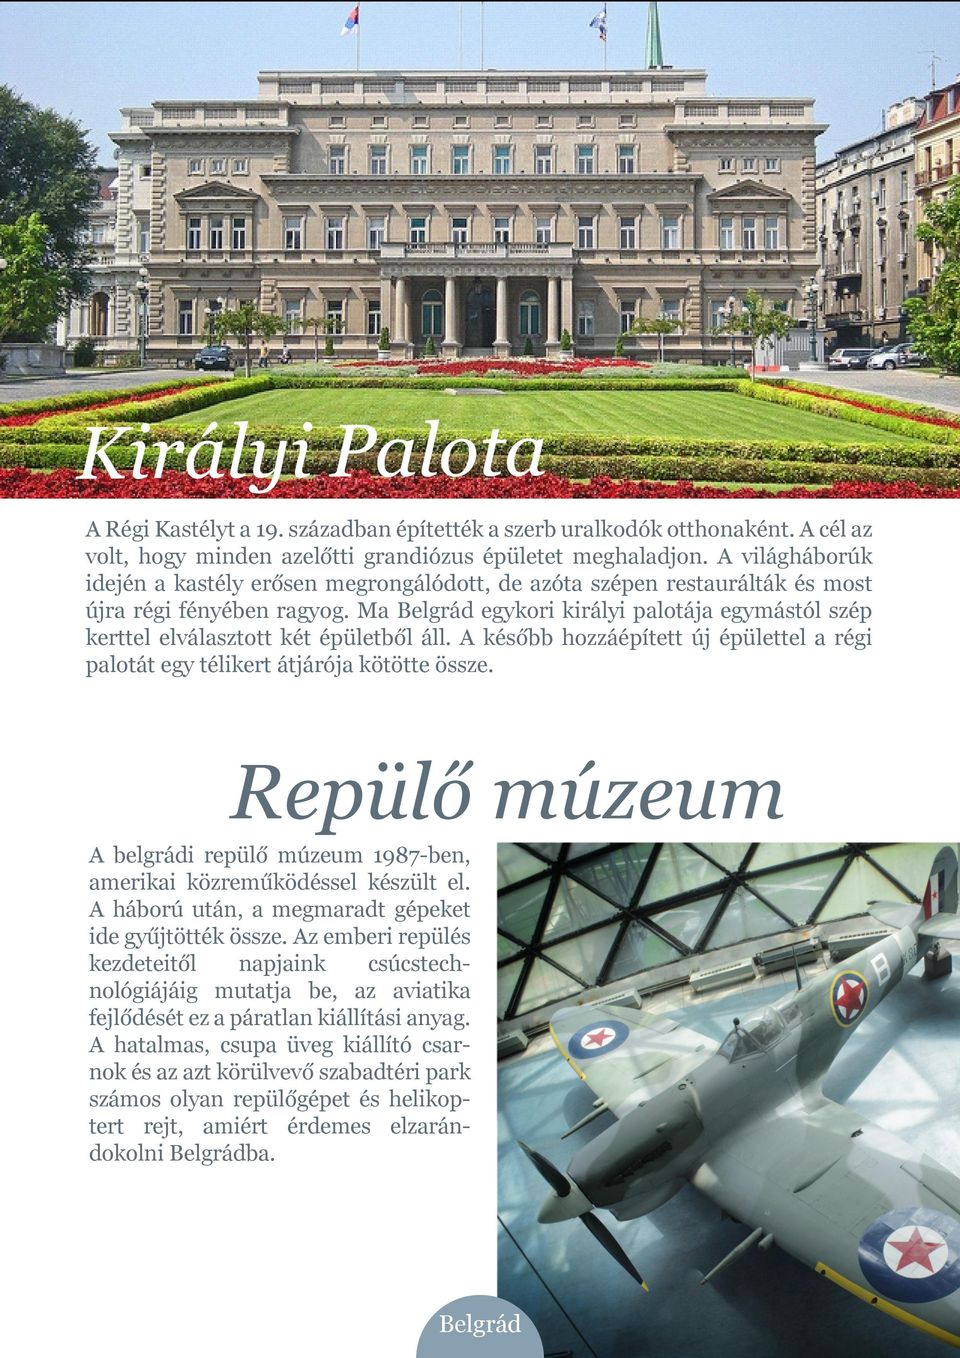 Ma Belgrád egykori királyi palotája egymástól szép kerttel elválasztott két épületből áll. A később hozzáépített új épülettel a régi palotát egy télikert átjárója kötötte össze.